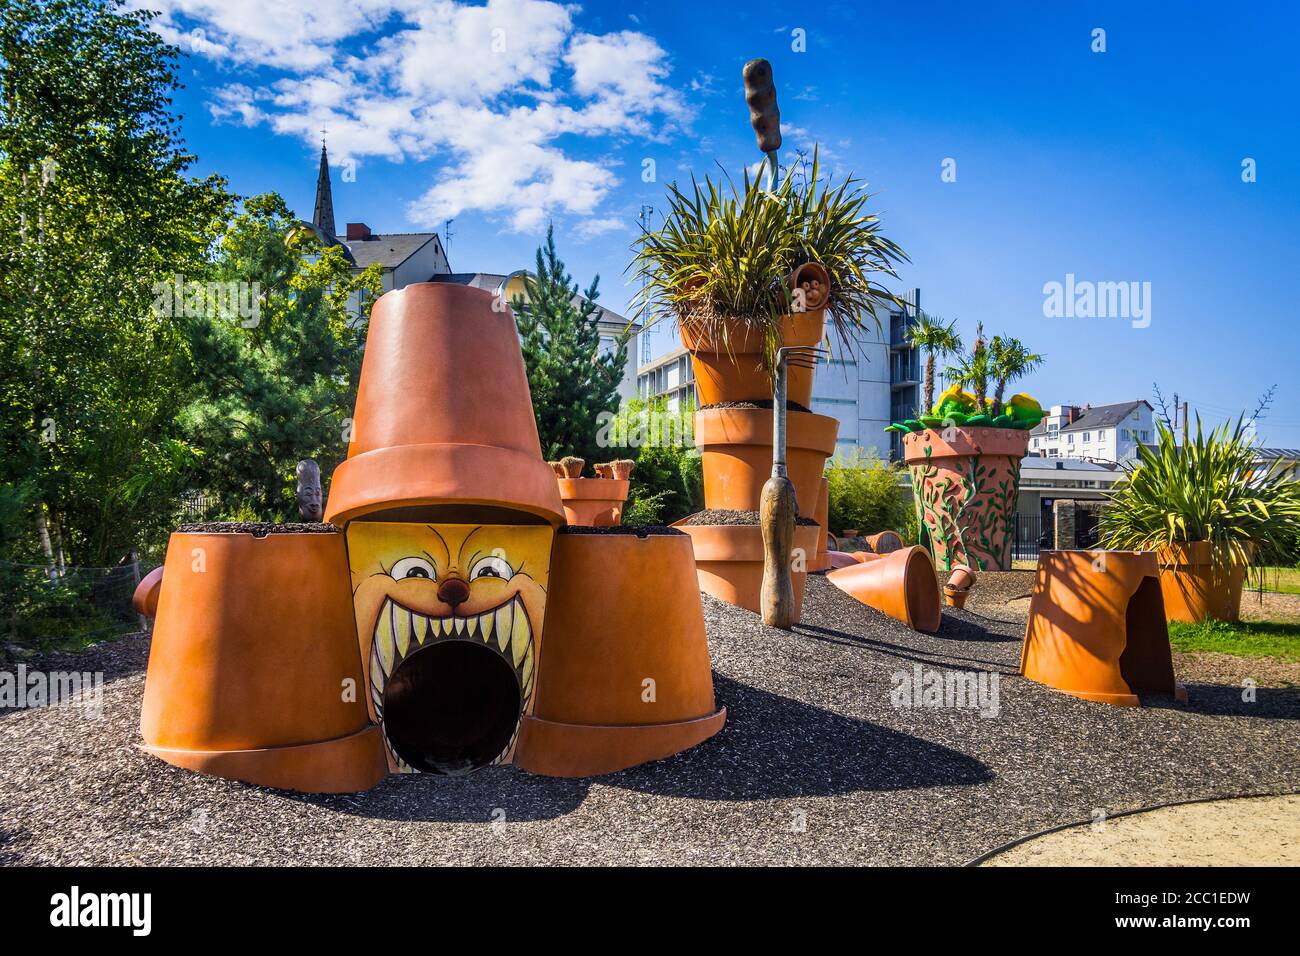 Giant plant pot sculptures in the Jardin des Plantes - Nantes, Loire-Atlantique, France. Stock Photo